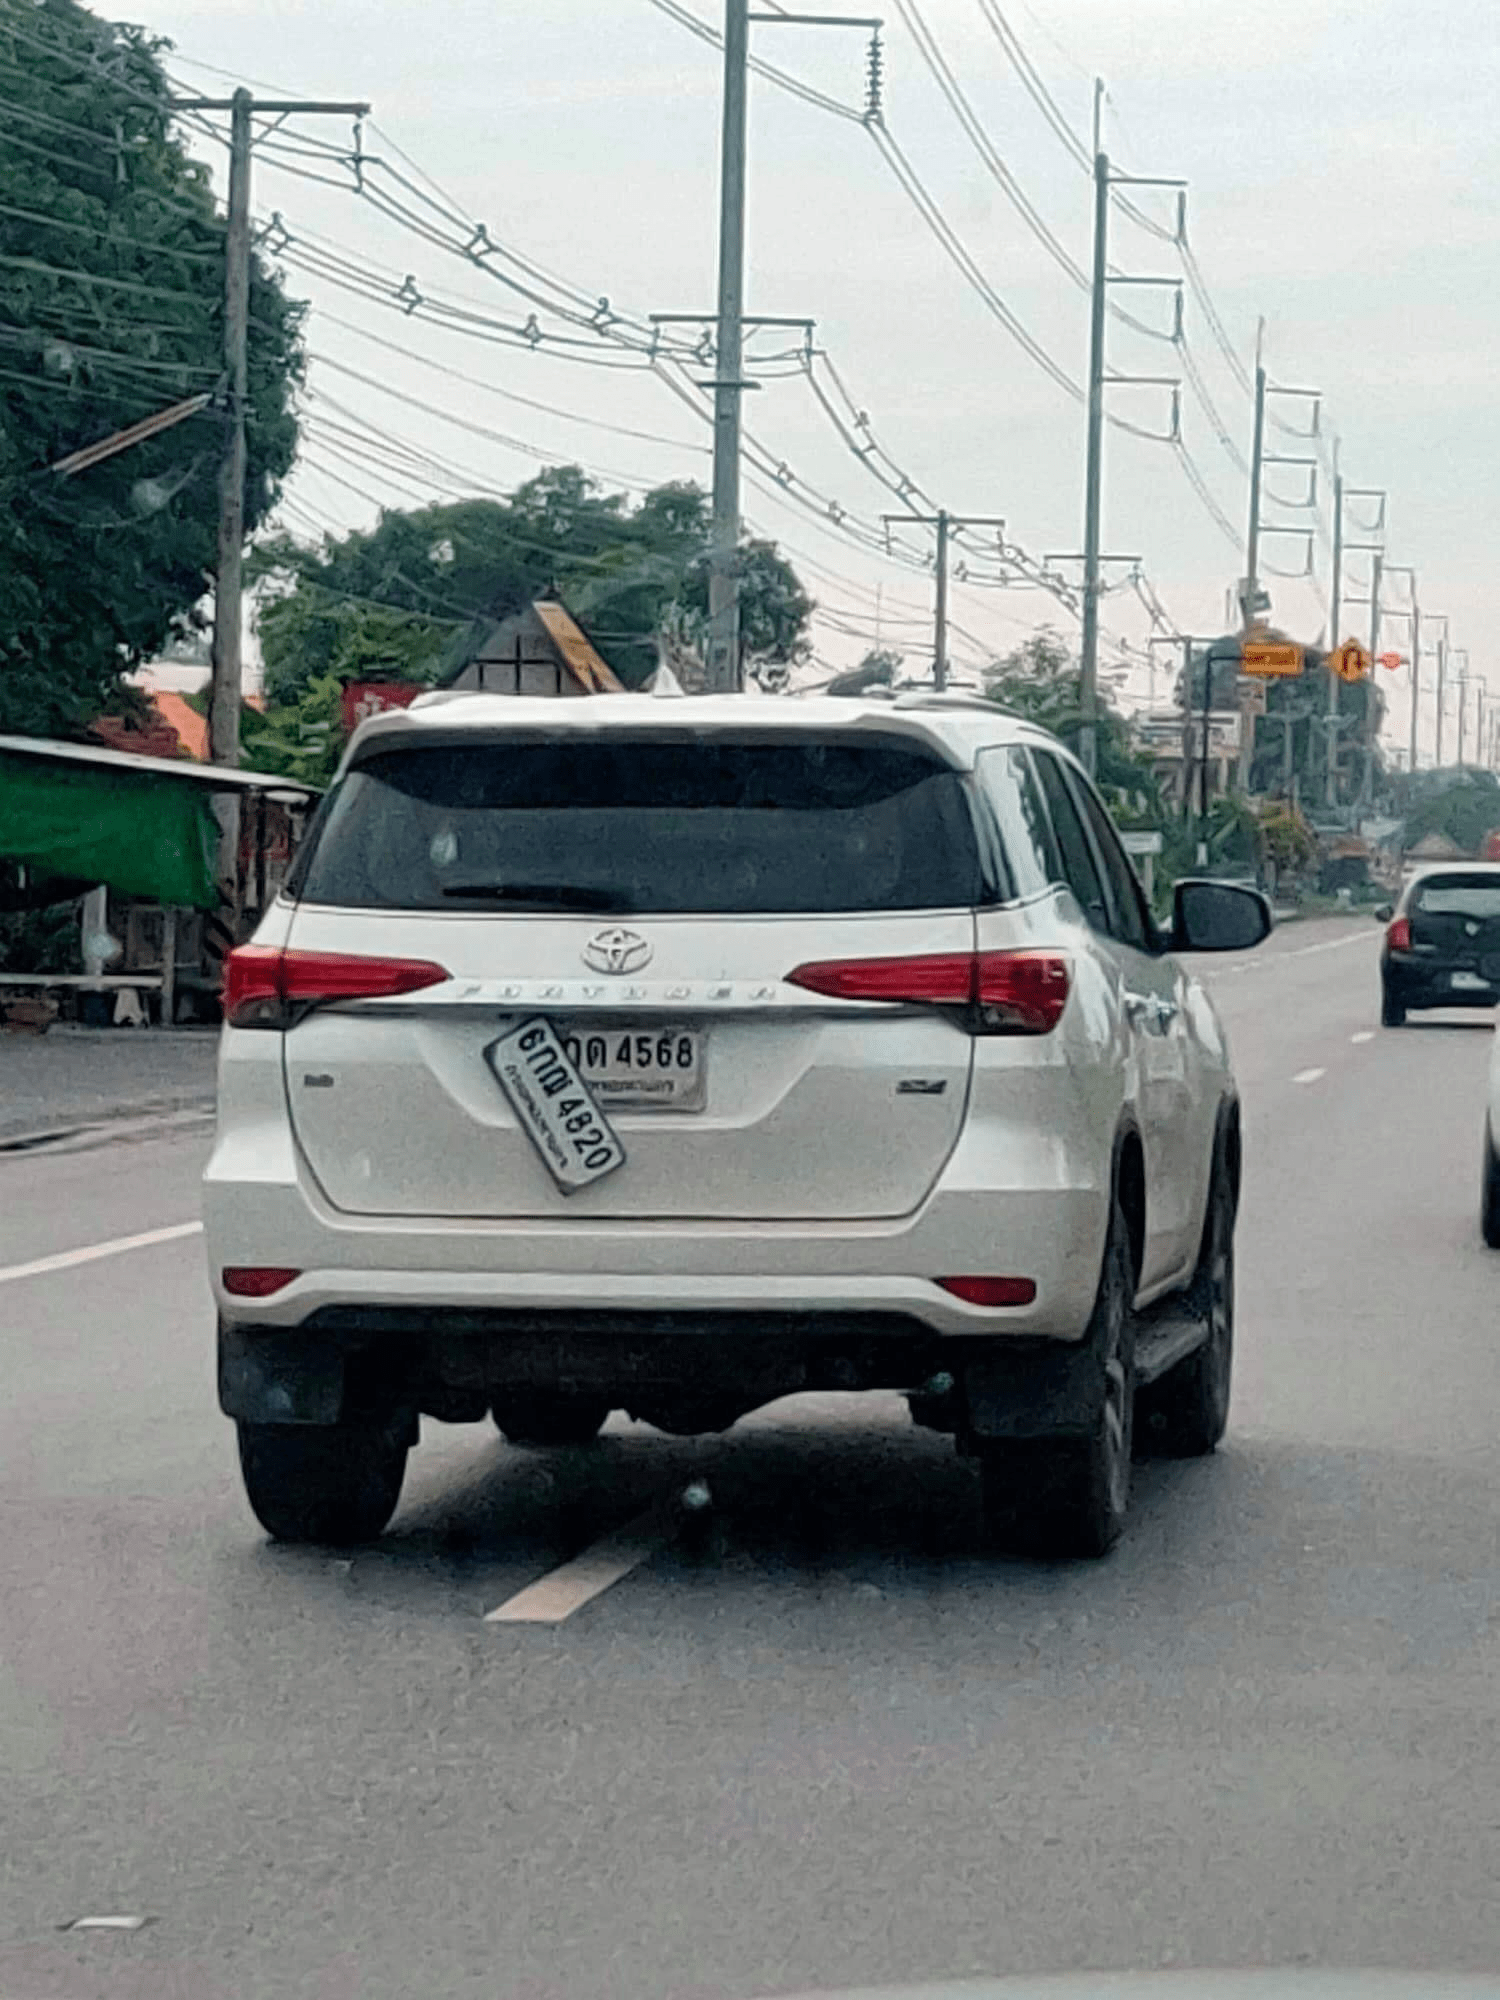 Suspicious car in Thailand